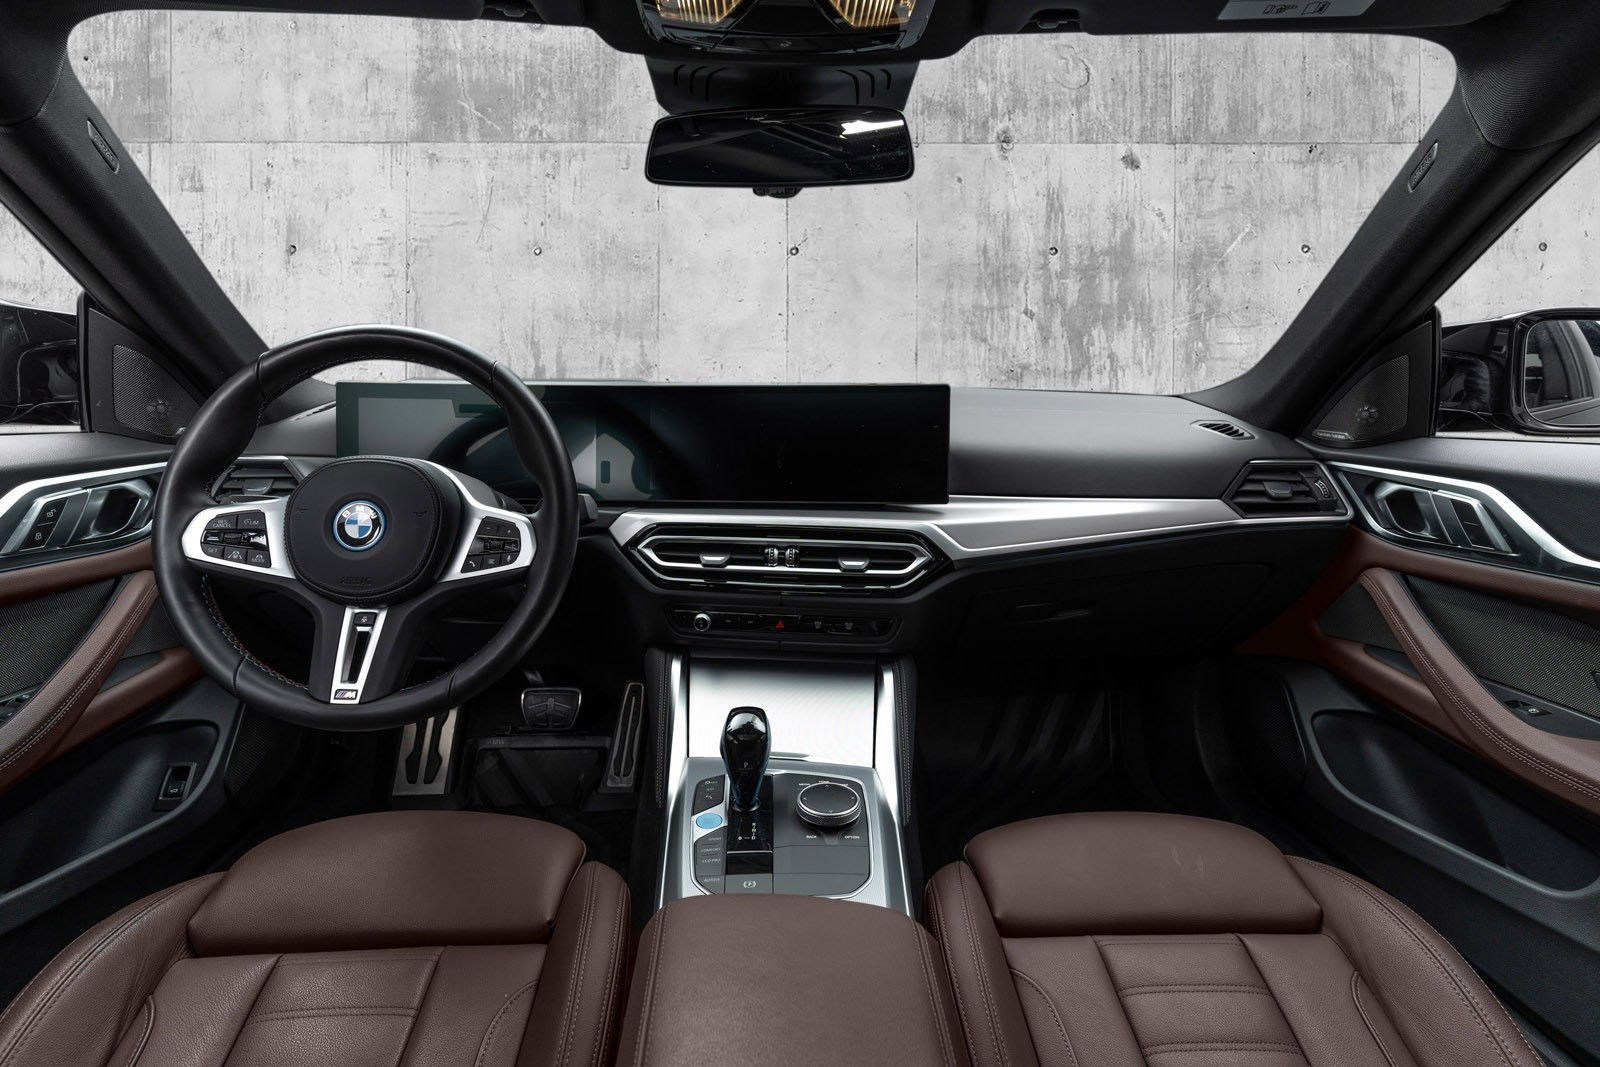 Bilen er utstyrt med BMW Live Cocpit Professional med Head-up Display